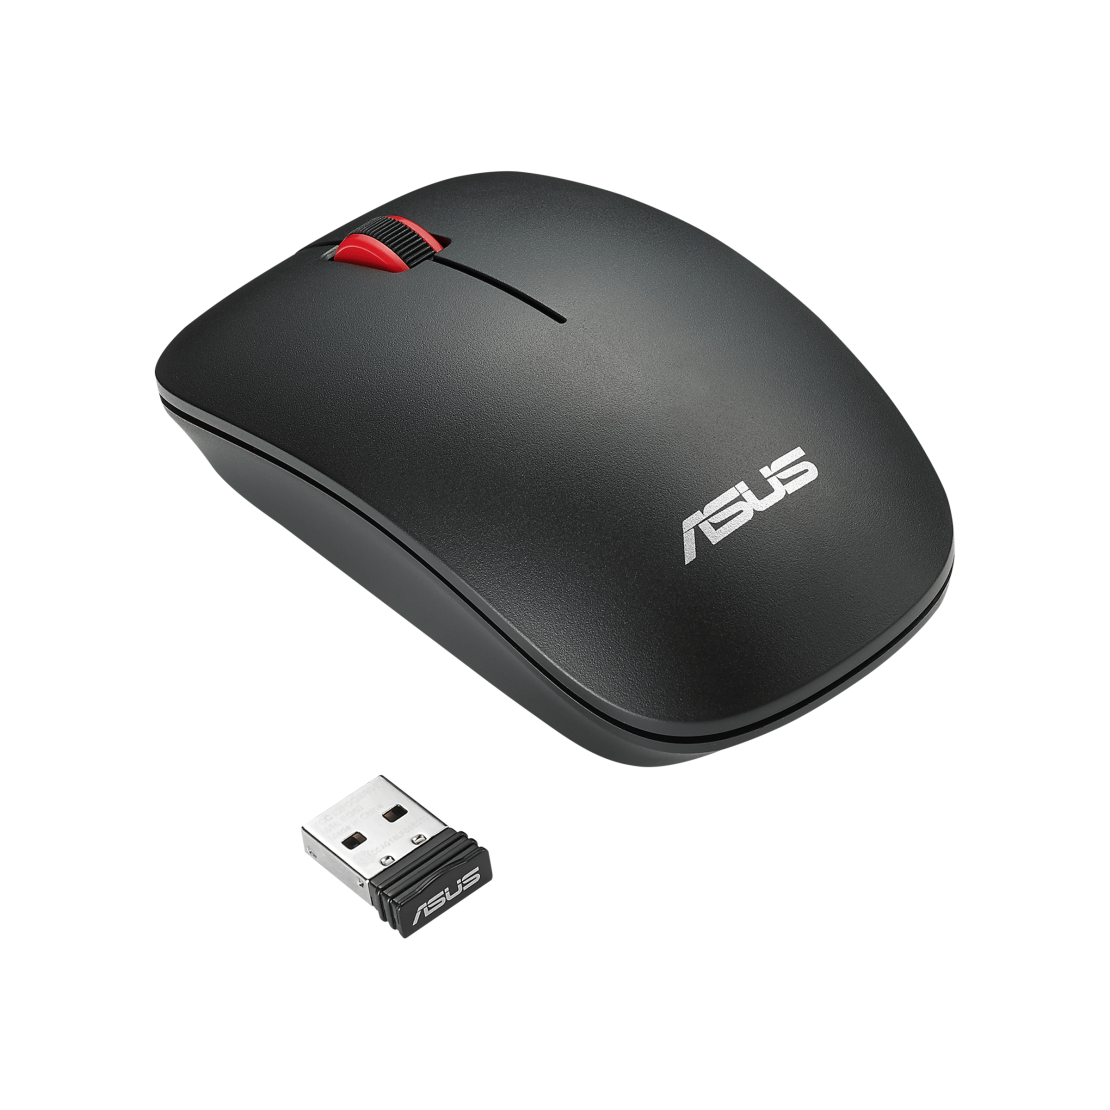 עכבר אלחוטי ASUS WT300 Wireless Mouse